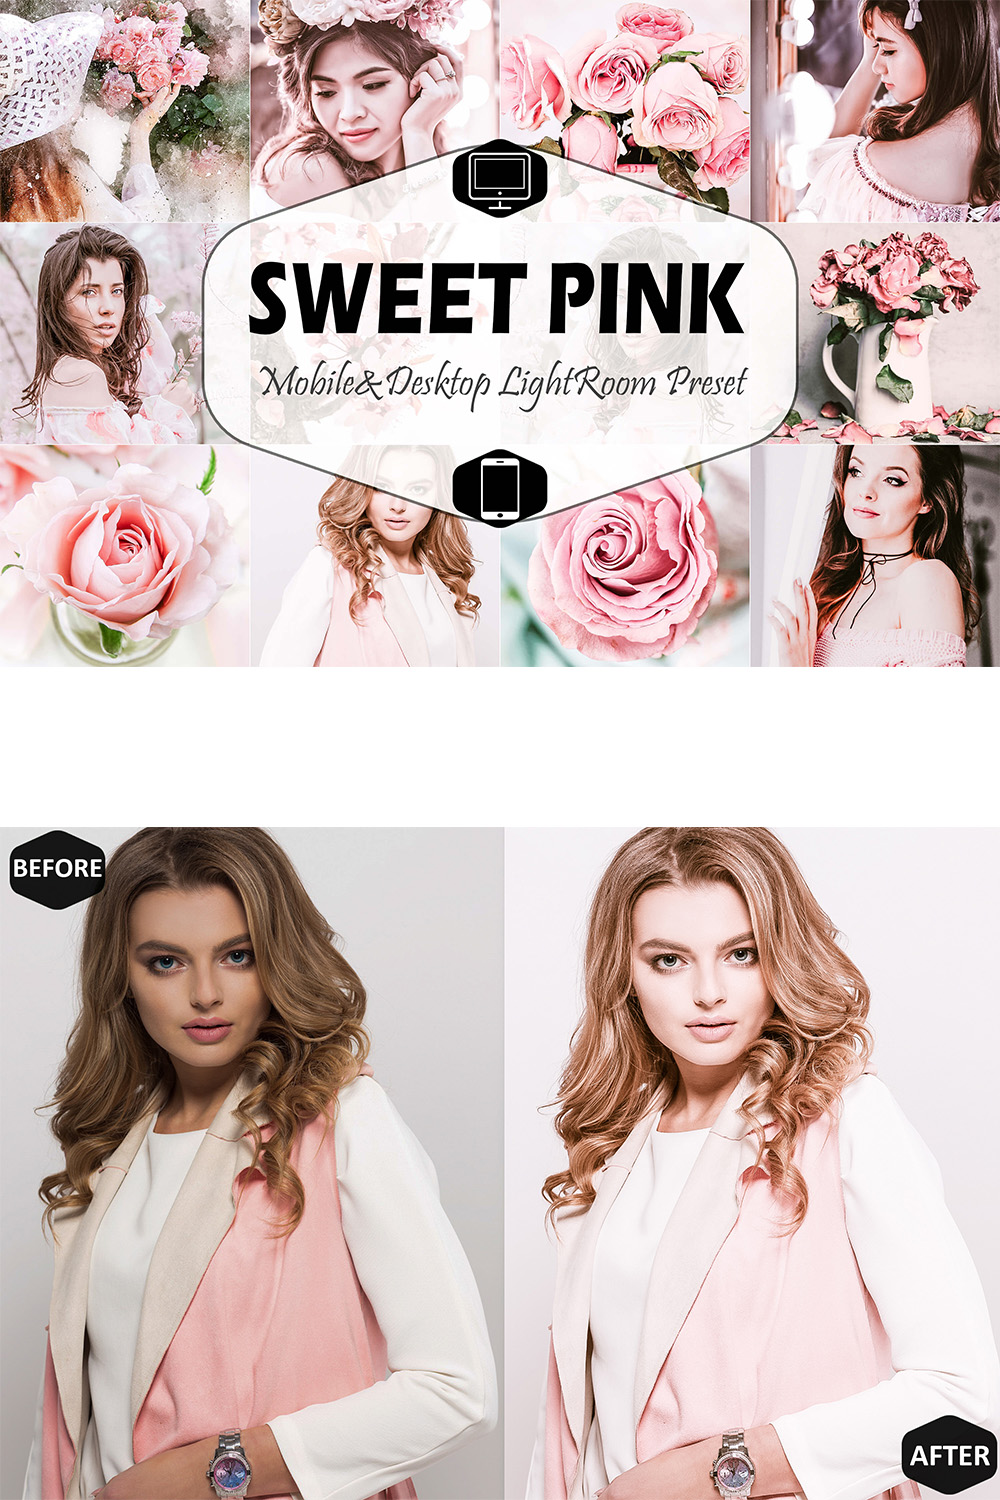 Sweet Pink Mobile & Desktop Lightroom Presets, Bright modern LR preset, Portrait Trendy Filter, DNG Travel Lifestyle Instagram Theme pinterest preview image.